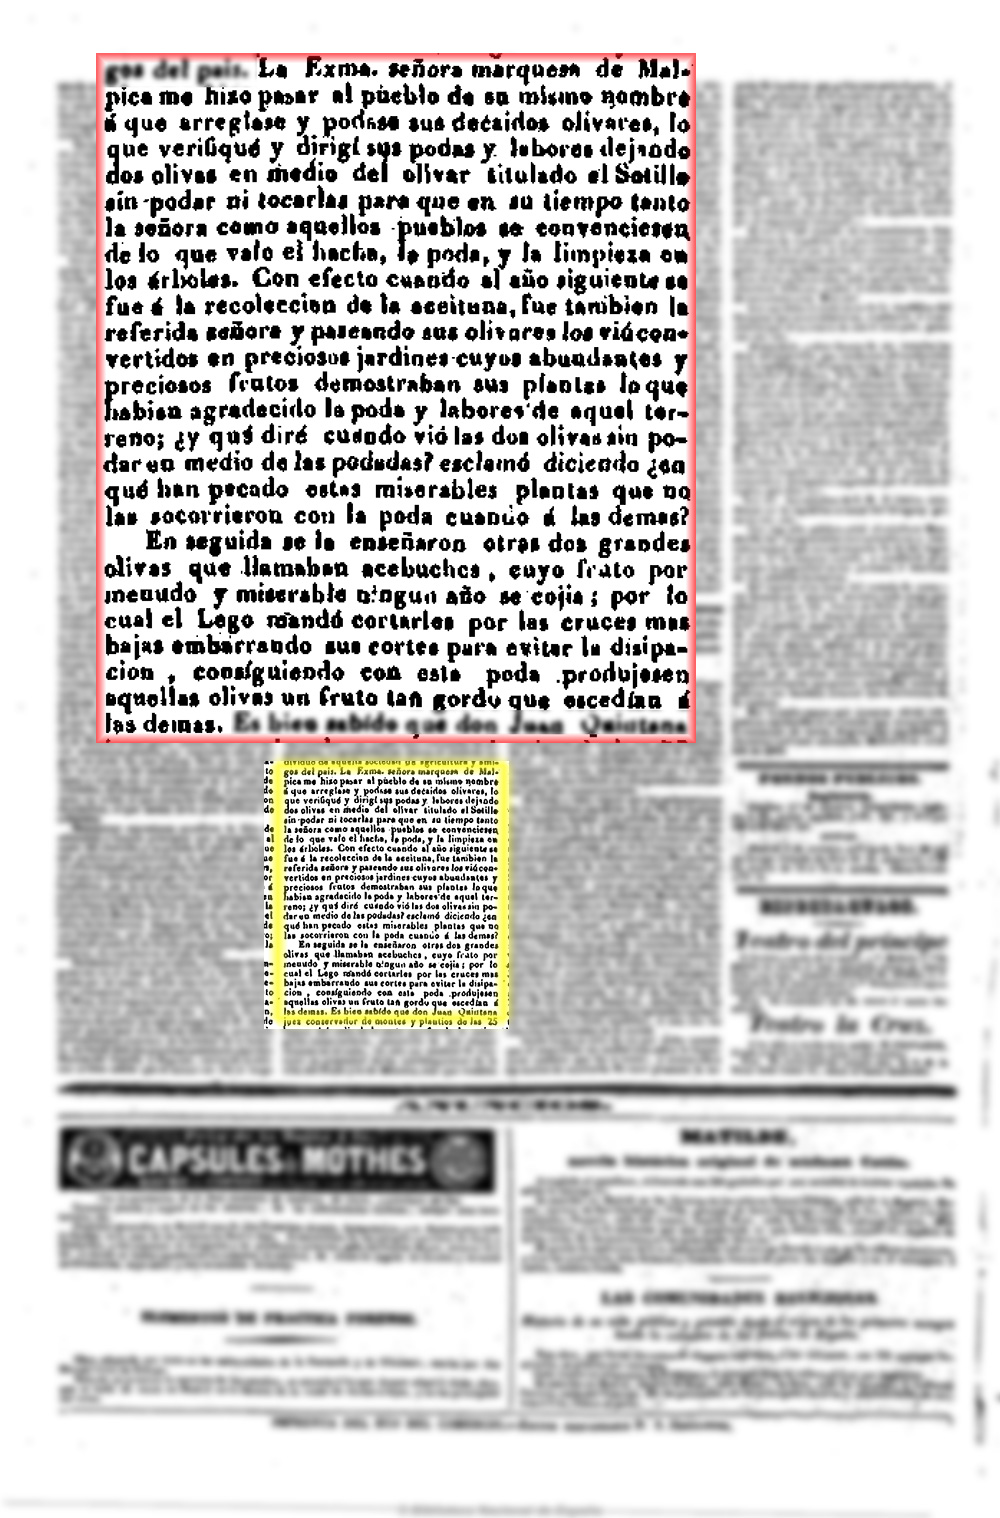 El Eco del comercio 10/10/1842, n.º 40, página 4, Demostración de la poda en el olivar del Sotillo de Malpica de Tajo propiedad del marqués del mismo nombre